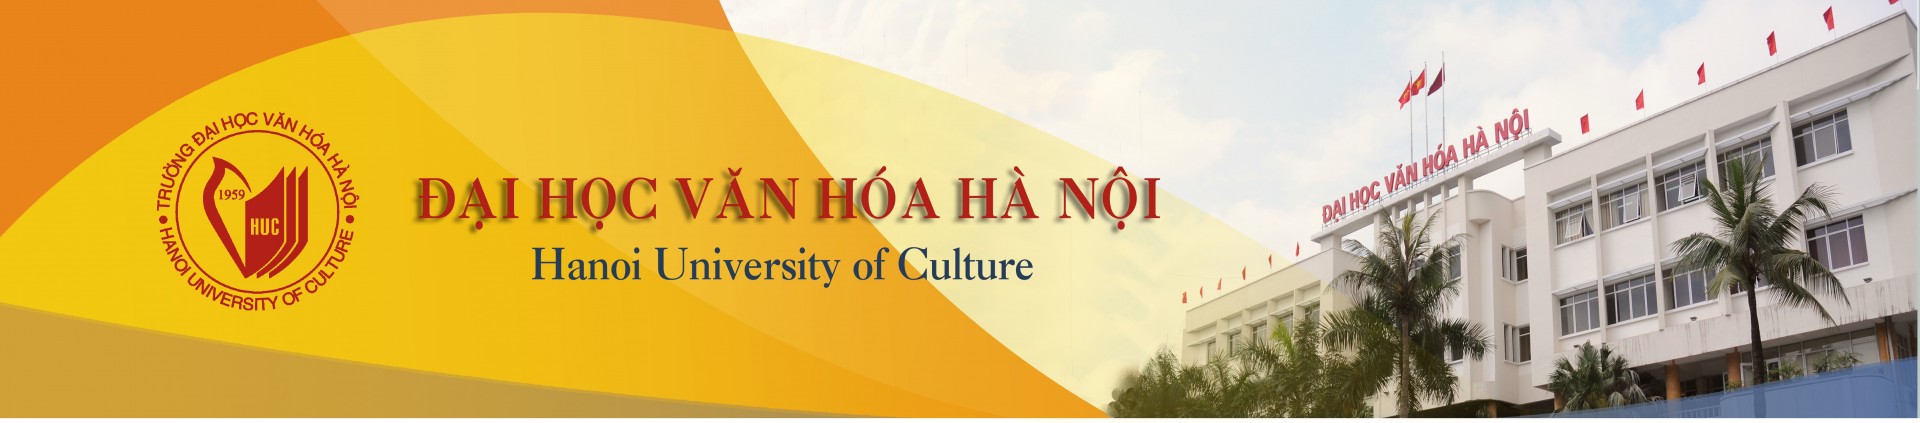 Sinh viên nghĩ gì về Đại học Văn hóa Hà Nội